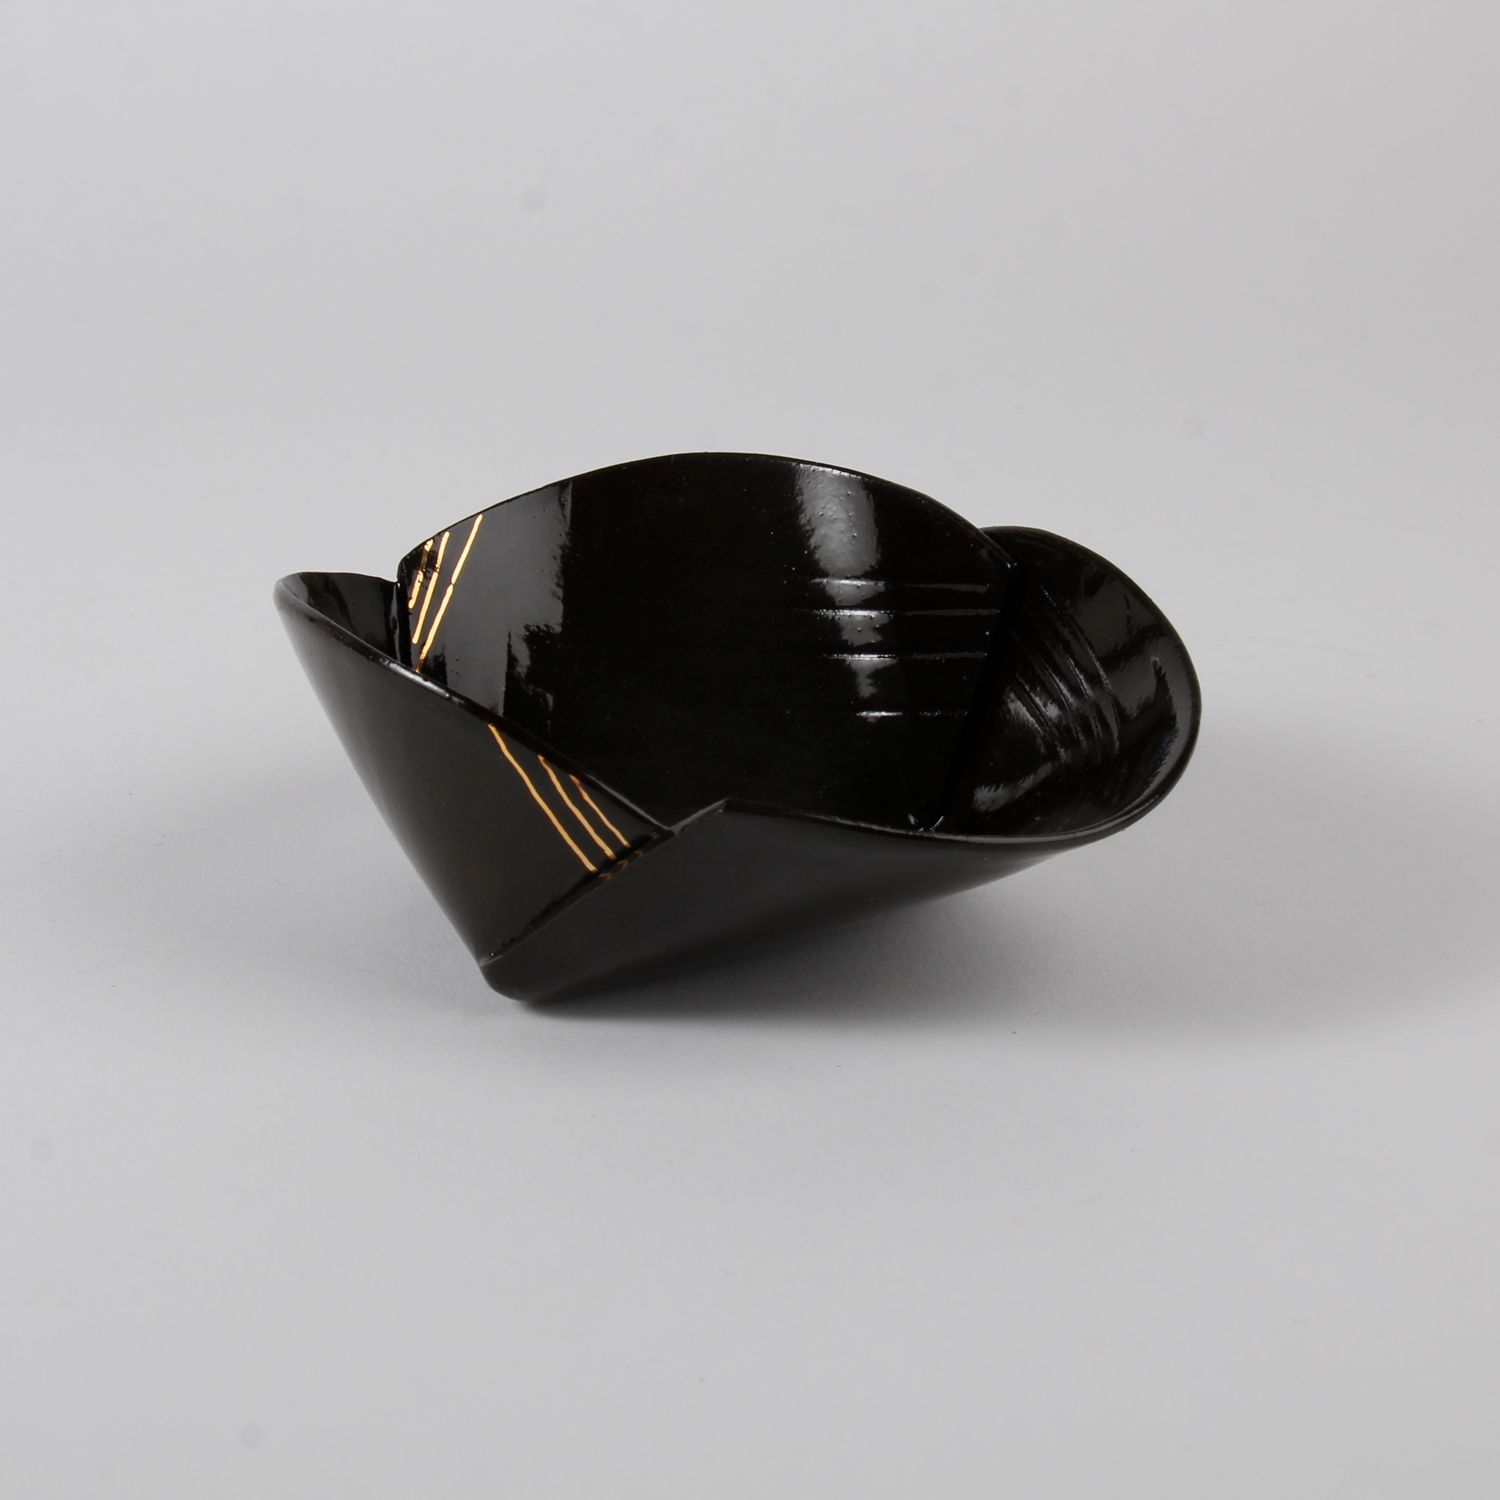 Natalie Waddell: X Large Black Folded Bowl Product Image 6 of 6